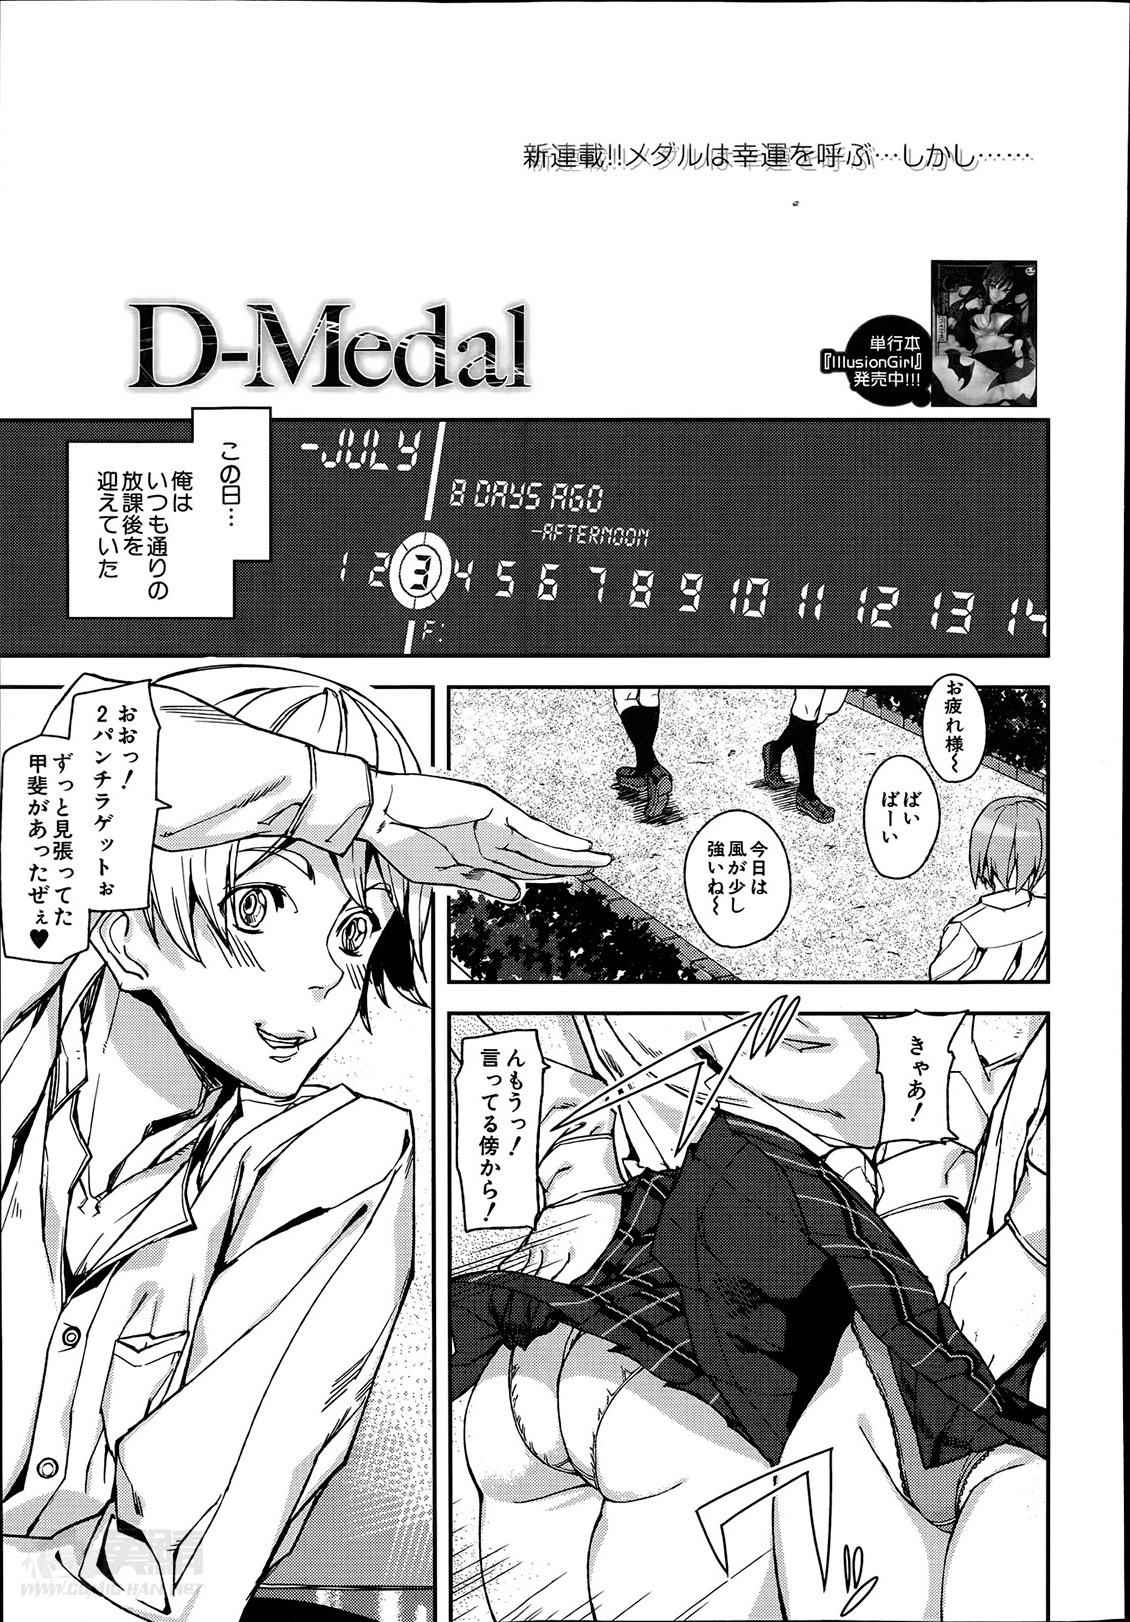 [Ashiomi Masato] D-Medal Ch.1-3 page 3 full